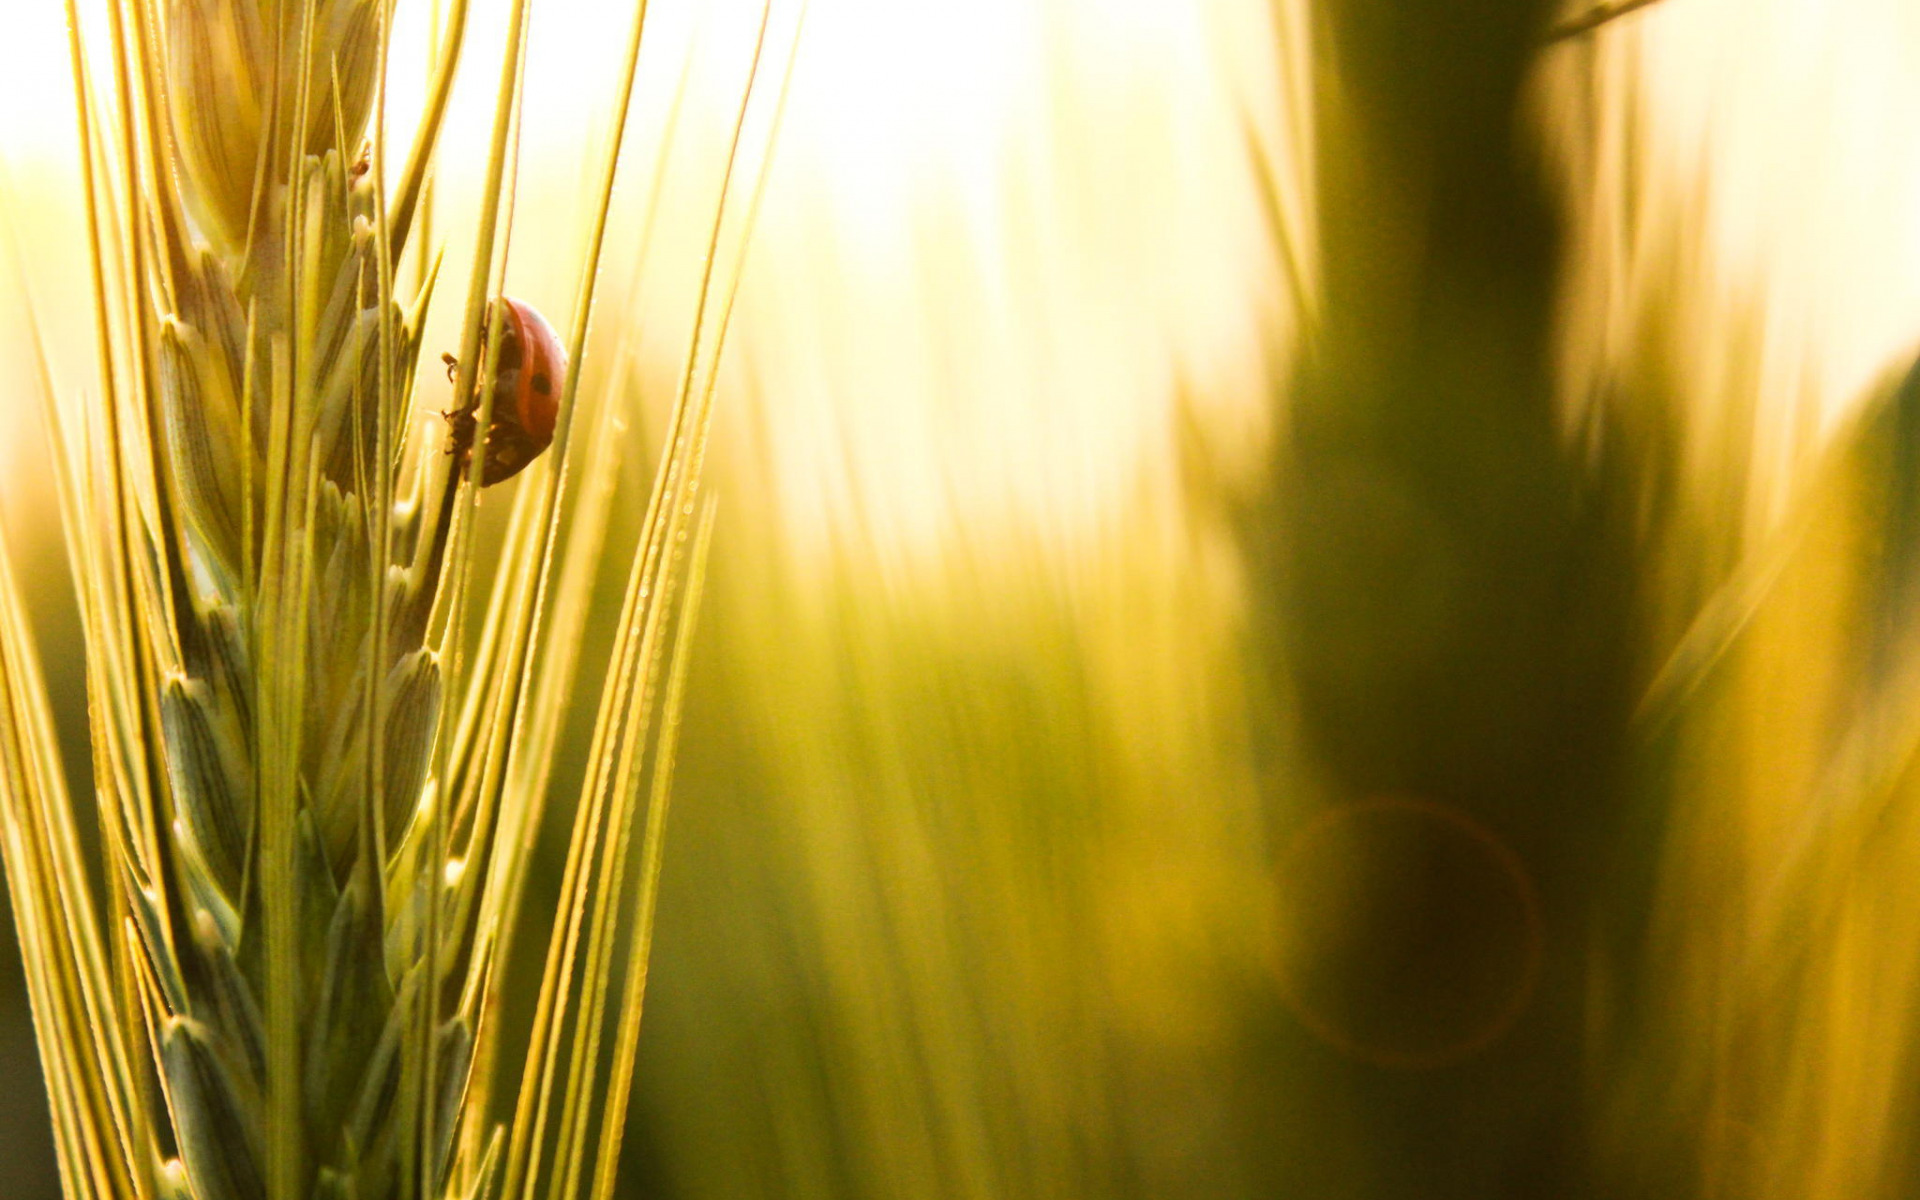 macro, ear, insect, ladybug, wheat, grass, grain, sun rays, glare, motion blur, макро, колос, насекомое, Божья коровка, пшеница, злак, зерно, лучи солнца, блики, размытость, лето